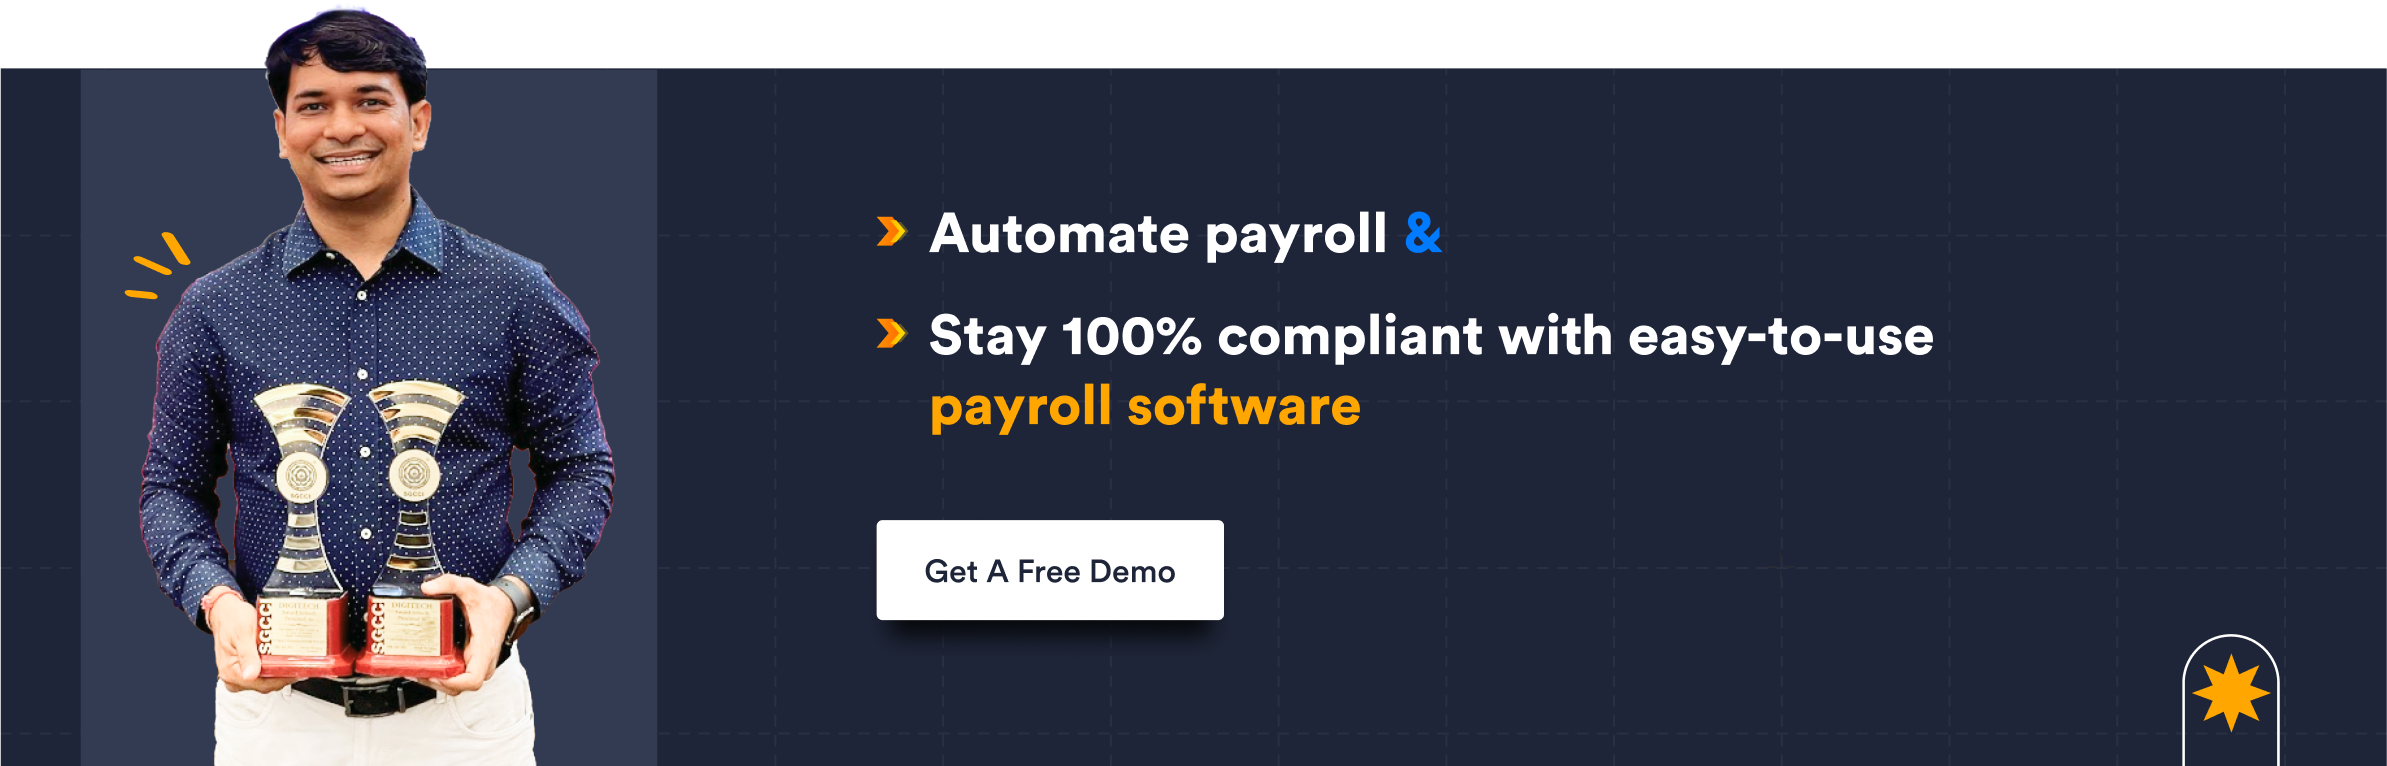 Automate payroll